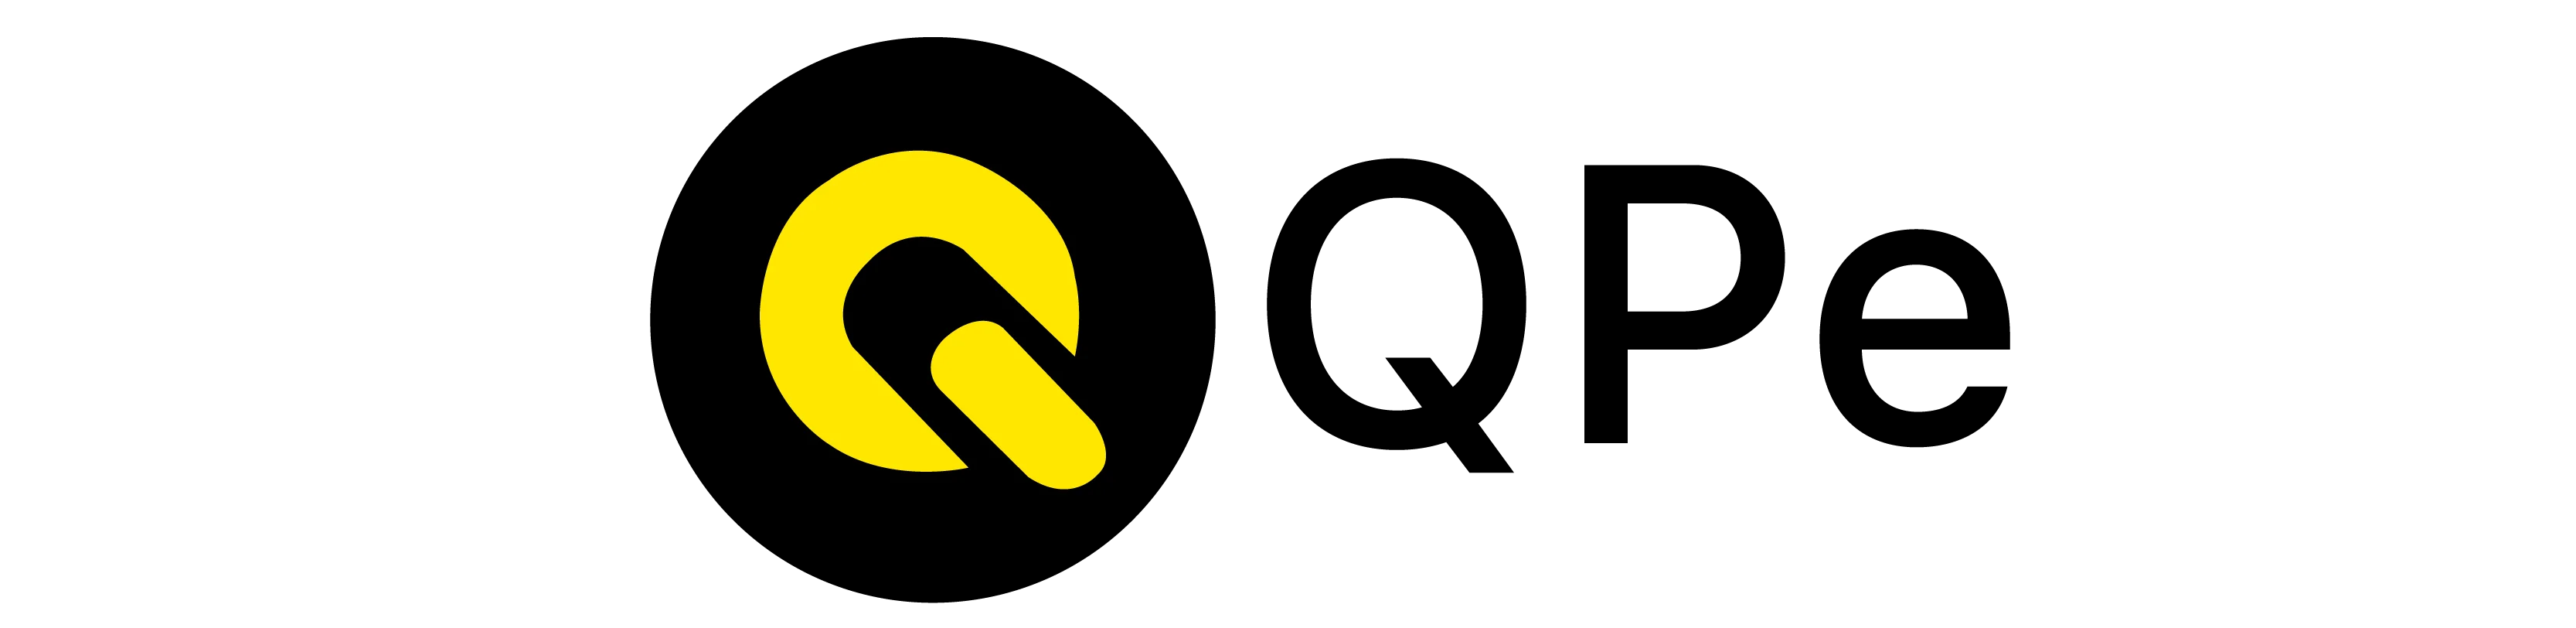 Qpe logo